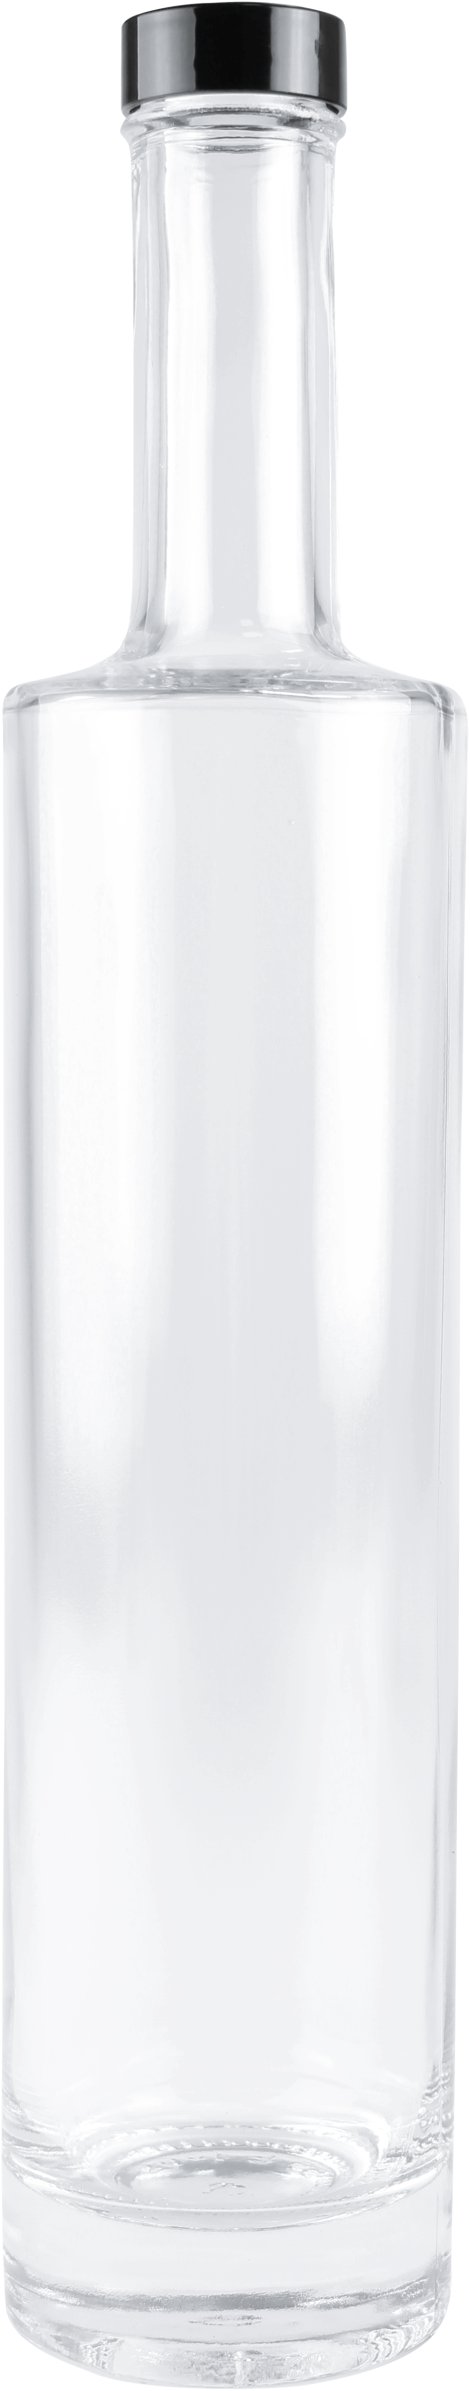 Kengaflasche mit Schraubverschluss 200 ml